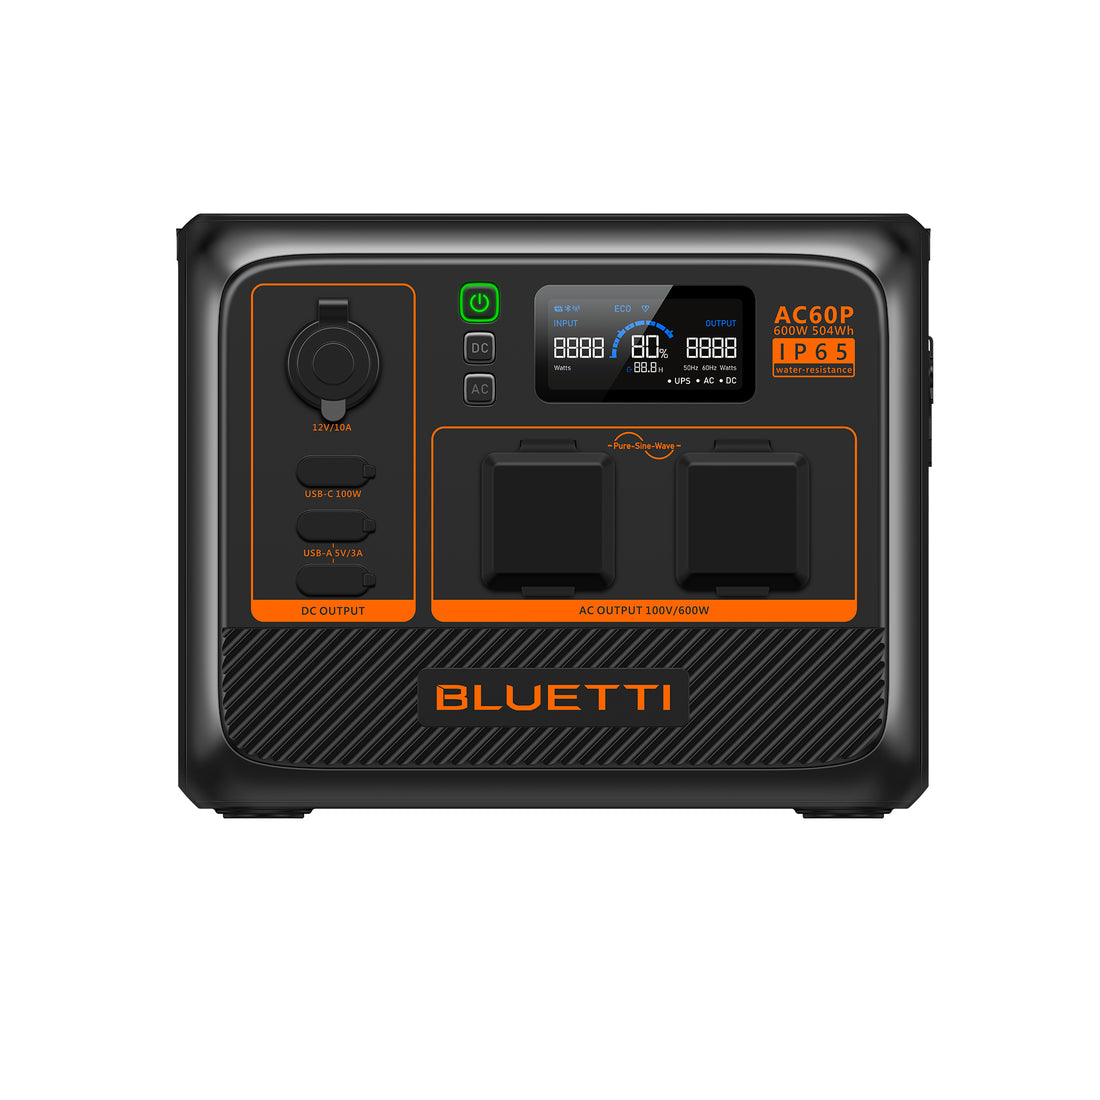 BLUETTIAC60P 小型ポータブル電源 | 防水・防塵モデル |504Wh、600W 